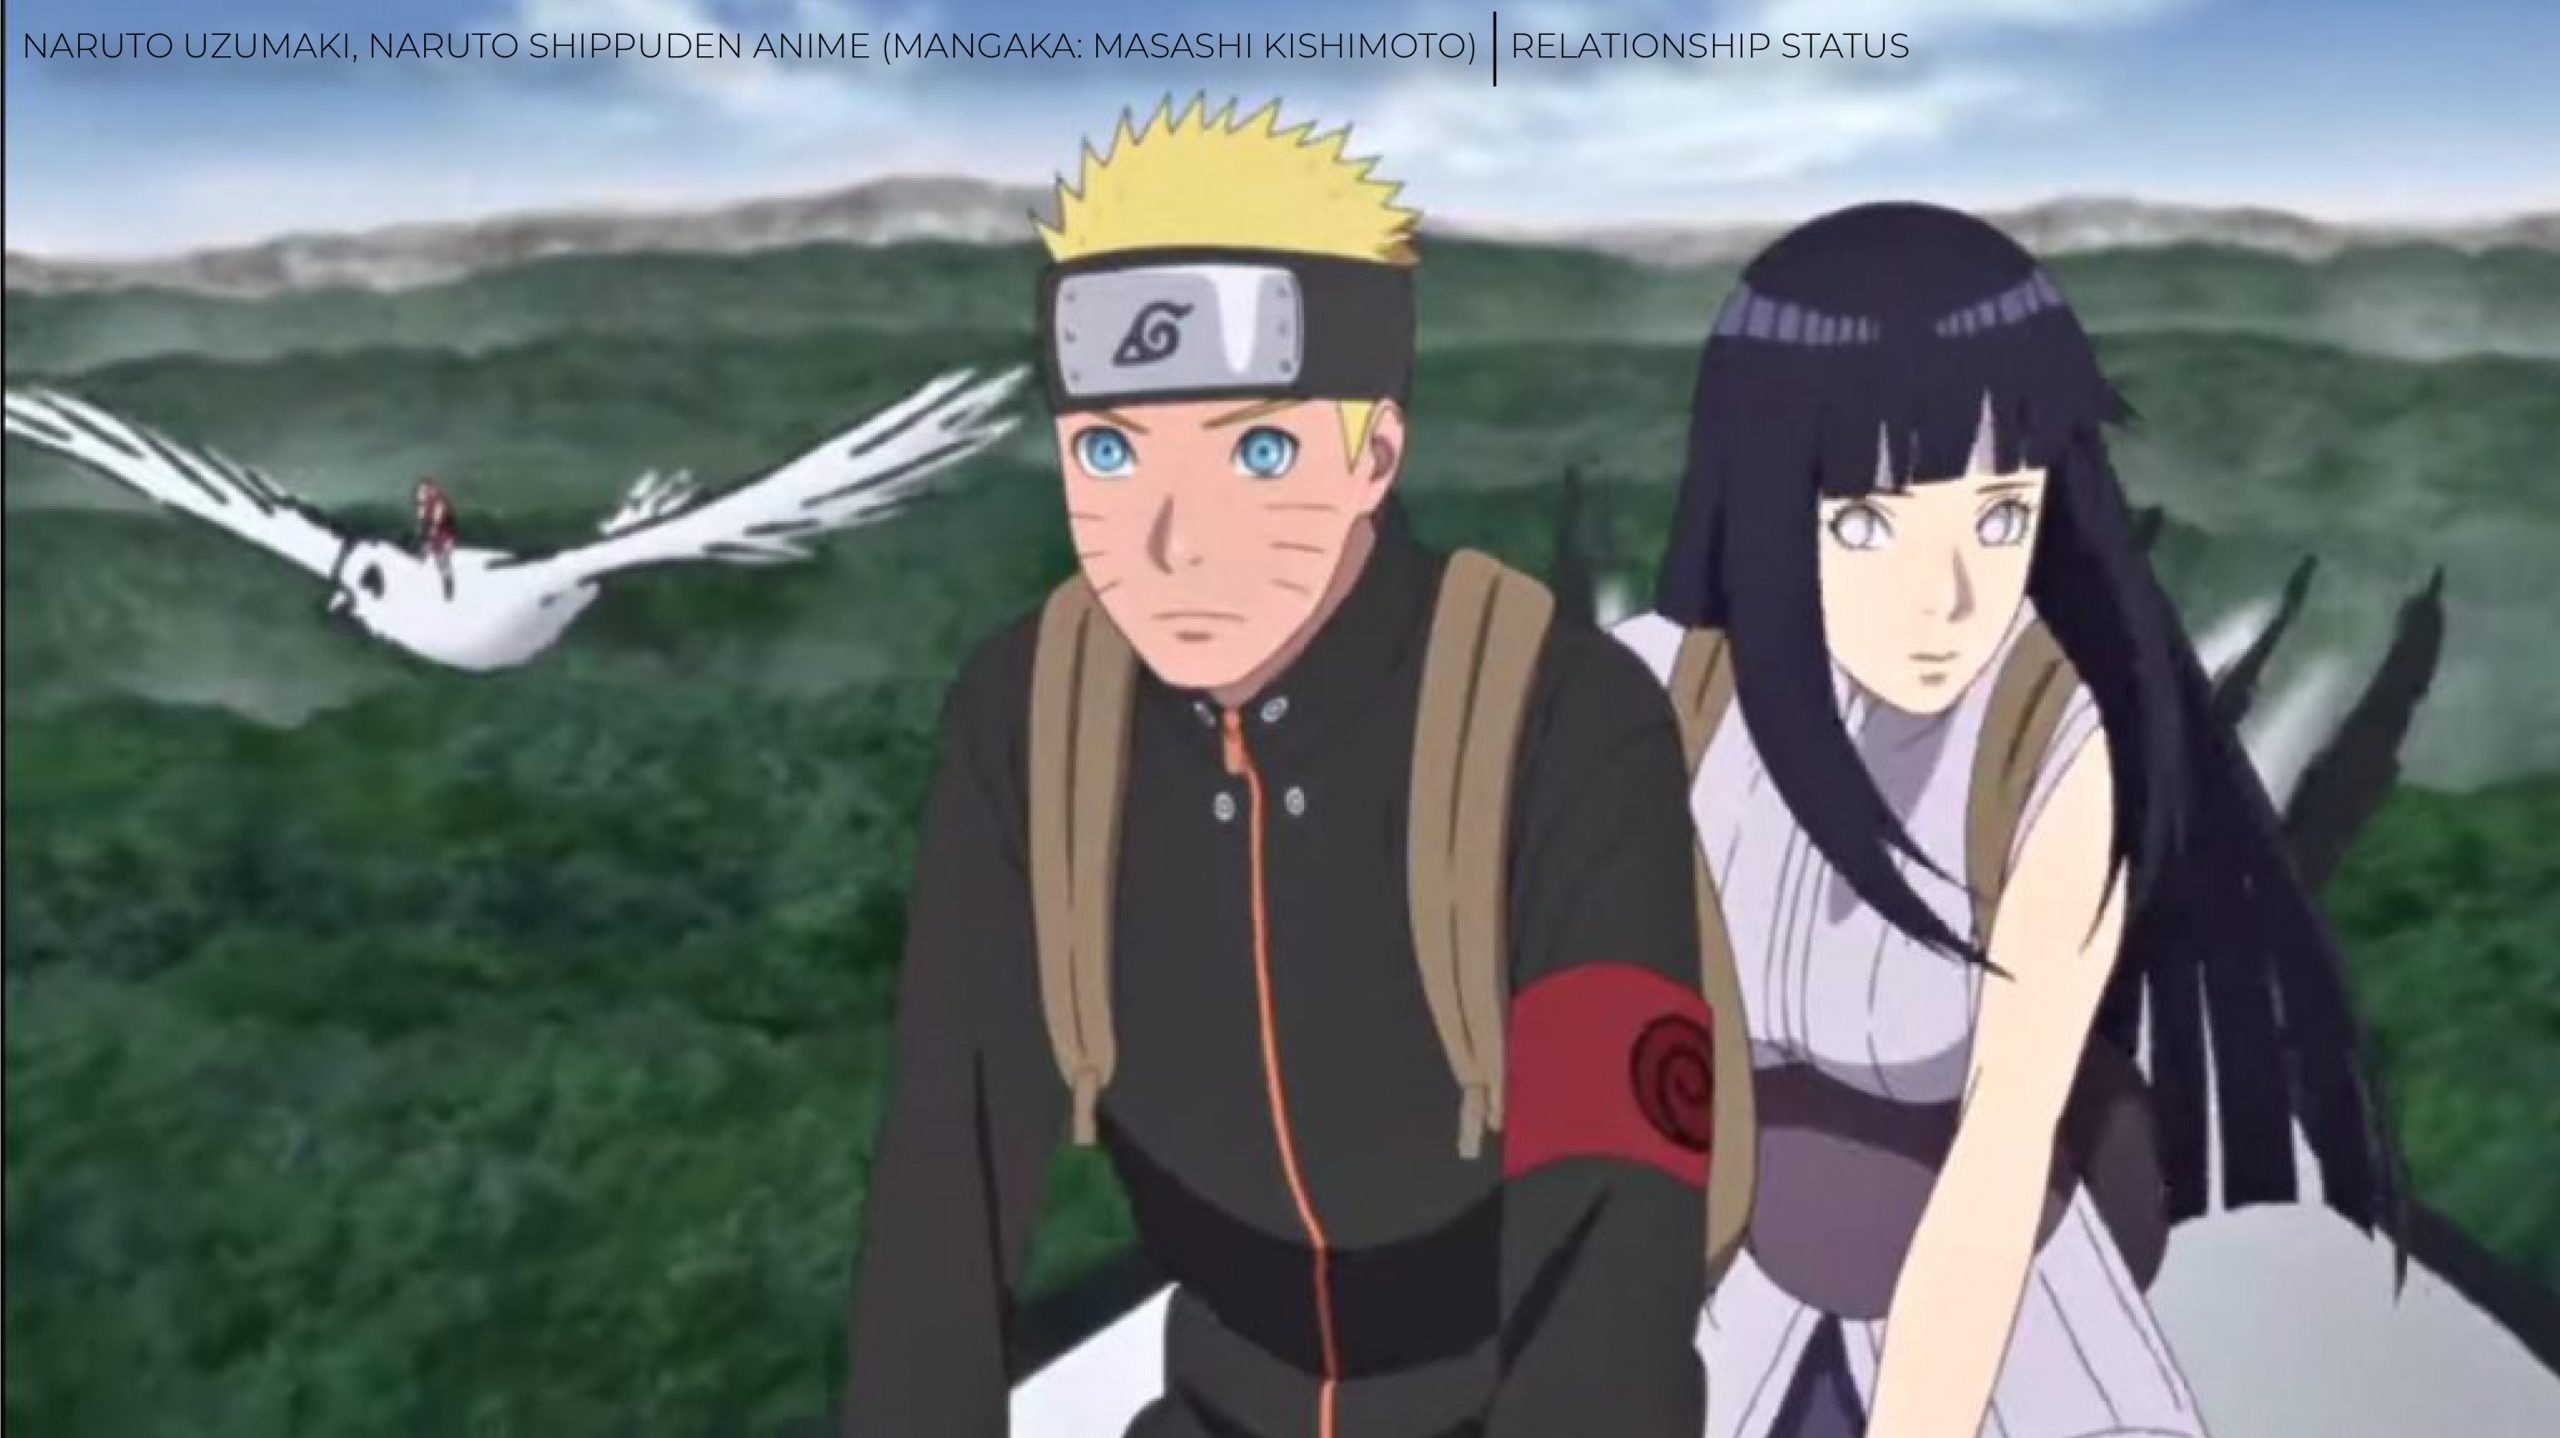 Este foi o momento em que Naruto se apaixonou por Hinata